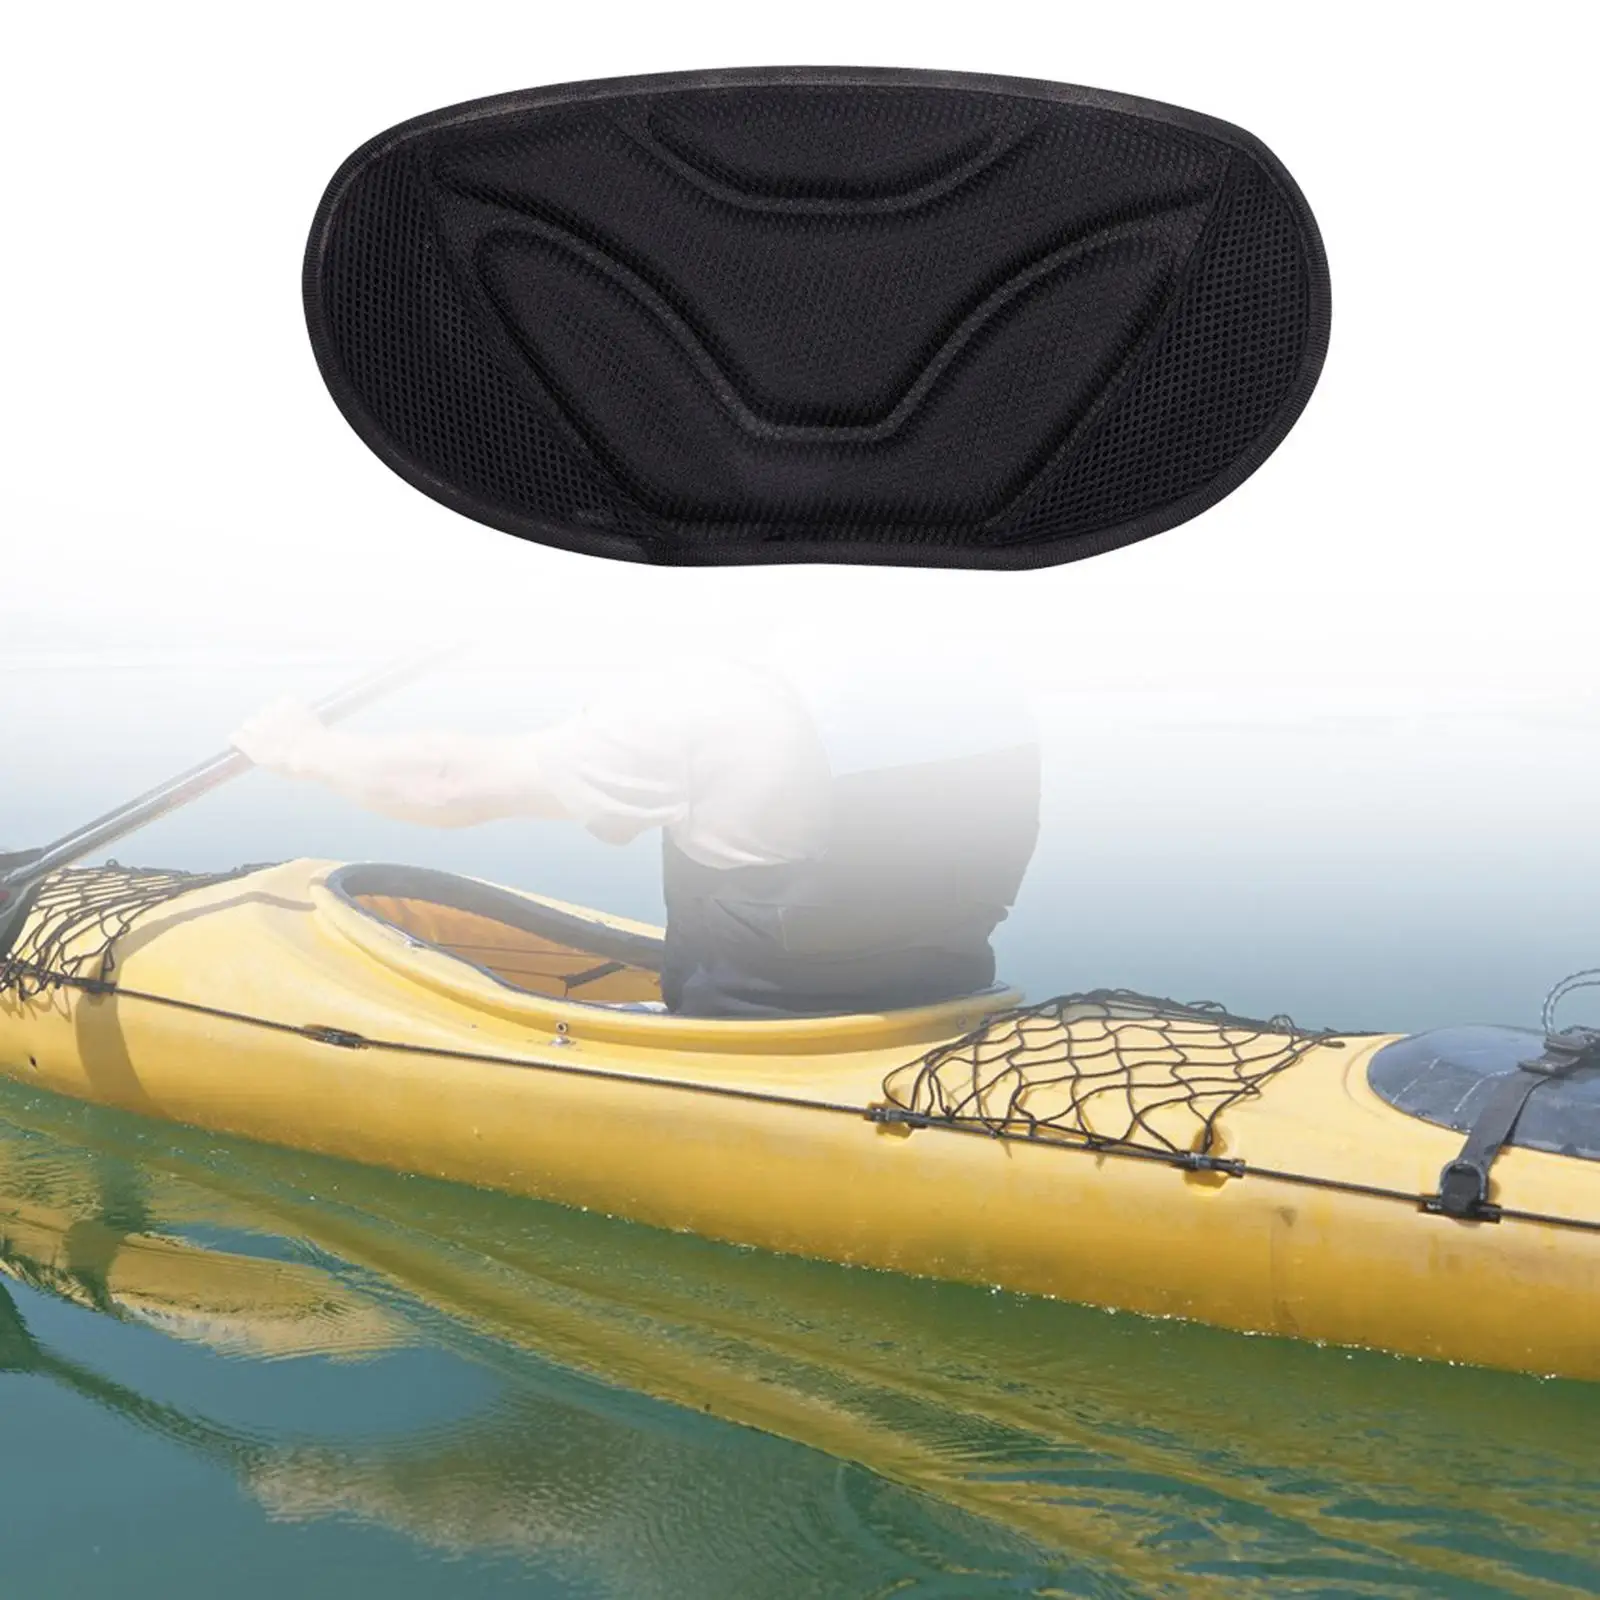 Kayak Cushion Fishing Kayak Seat Fishing Accessories Kayaking Seat Canoe Cushion Kayak Seat Kayak Supplies